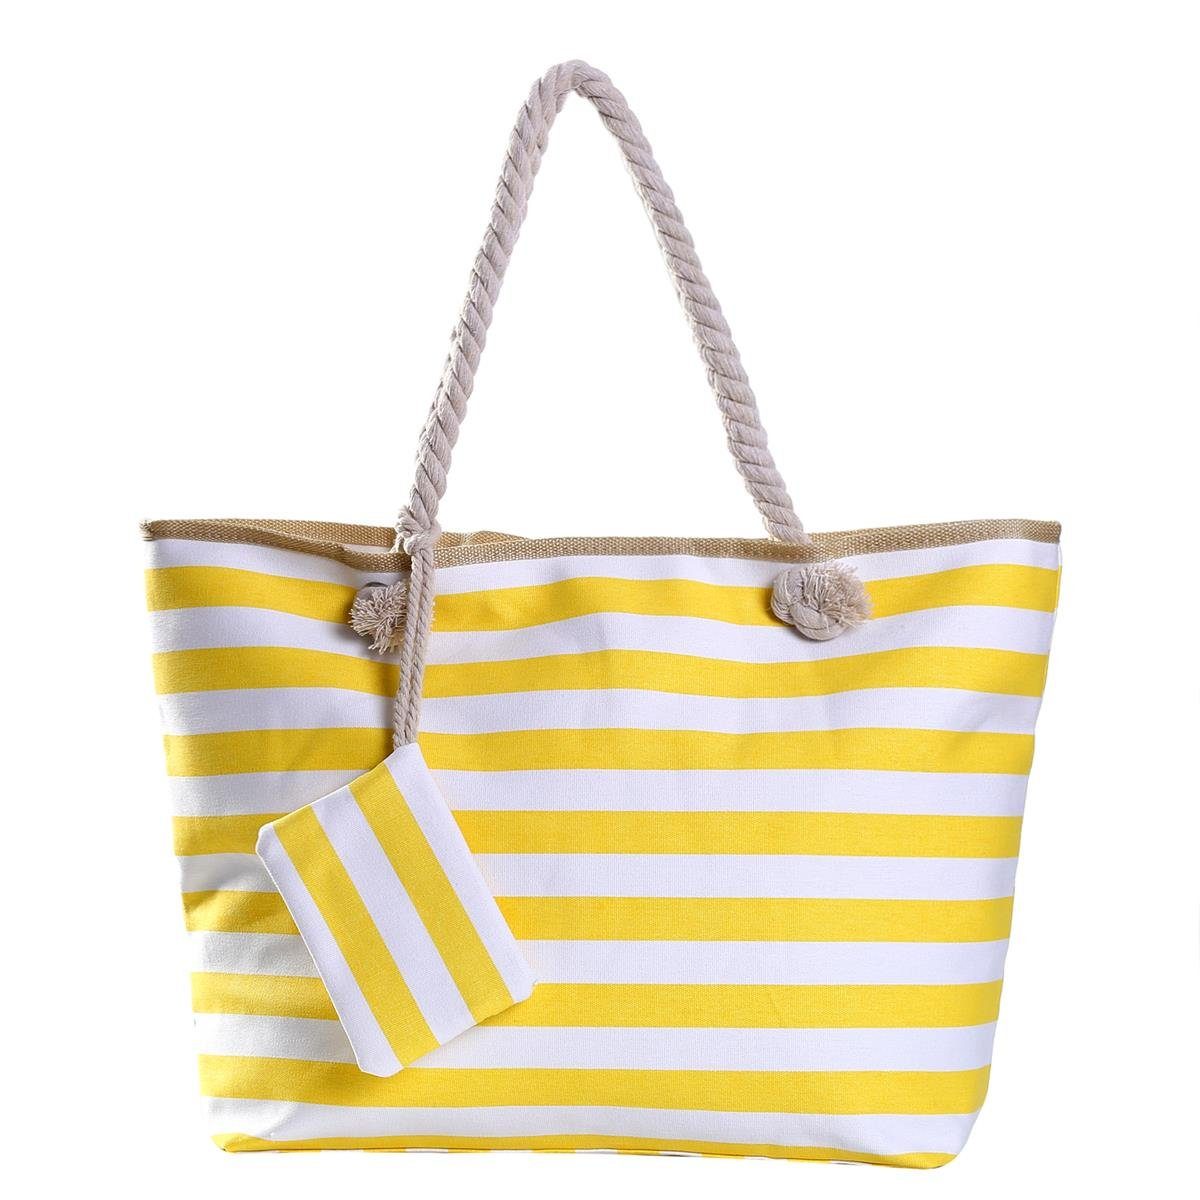 DonDon Strandtasche Shopper wasserabweisende Tasche (2-tlg), Große Strandtasche, mit Reißverschluss, inkl. kleinem Beutel gelb-weiß gestreift 2